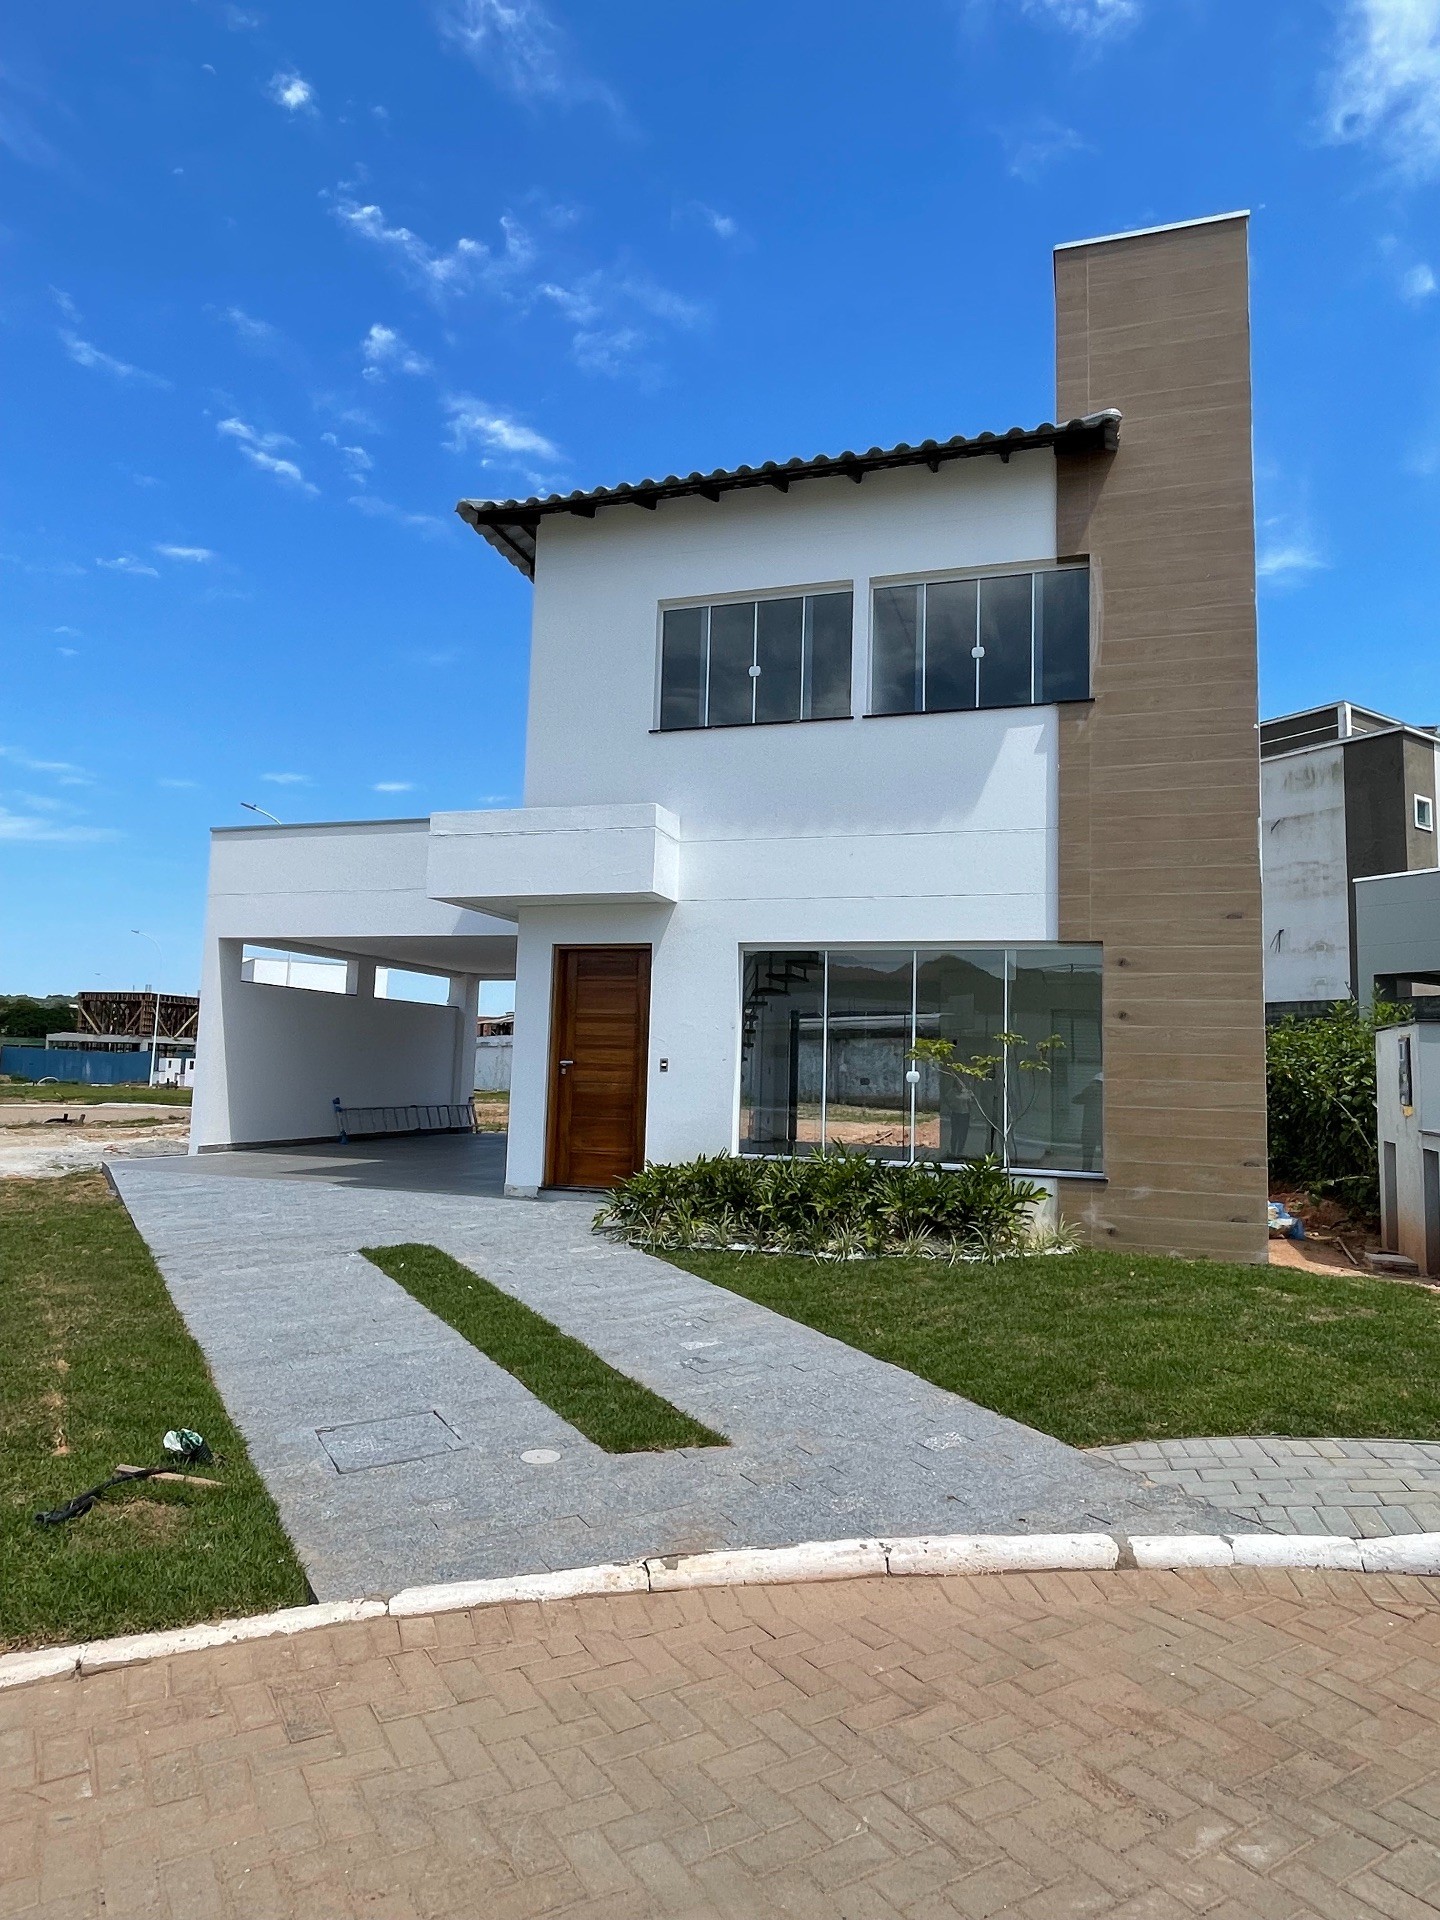 OPORTUNIDADE EXCLUSIVA! Casa em Condomínio possuindo 3 dormitórios (sendo 1 Suíte), 2 vagas de garagem e Condições de Pagamento Facilitadas, Localizada na Barra em Balneário Camboriú!!!